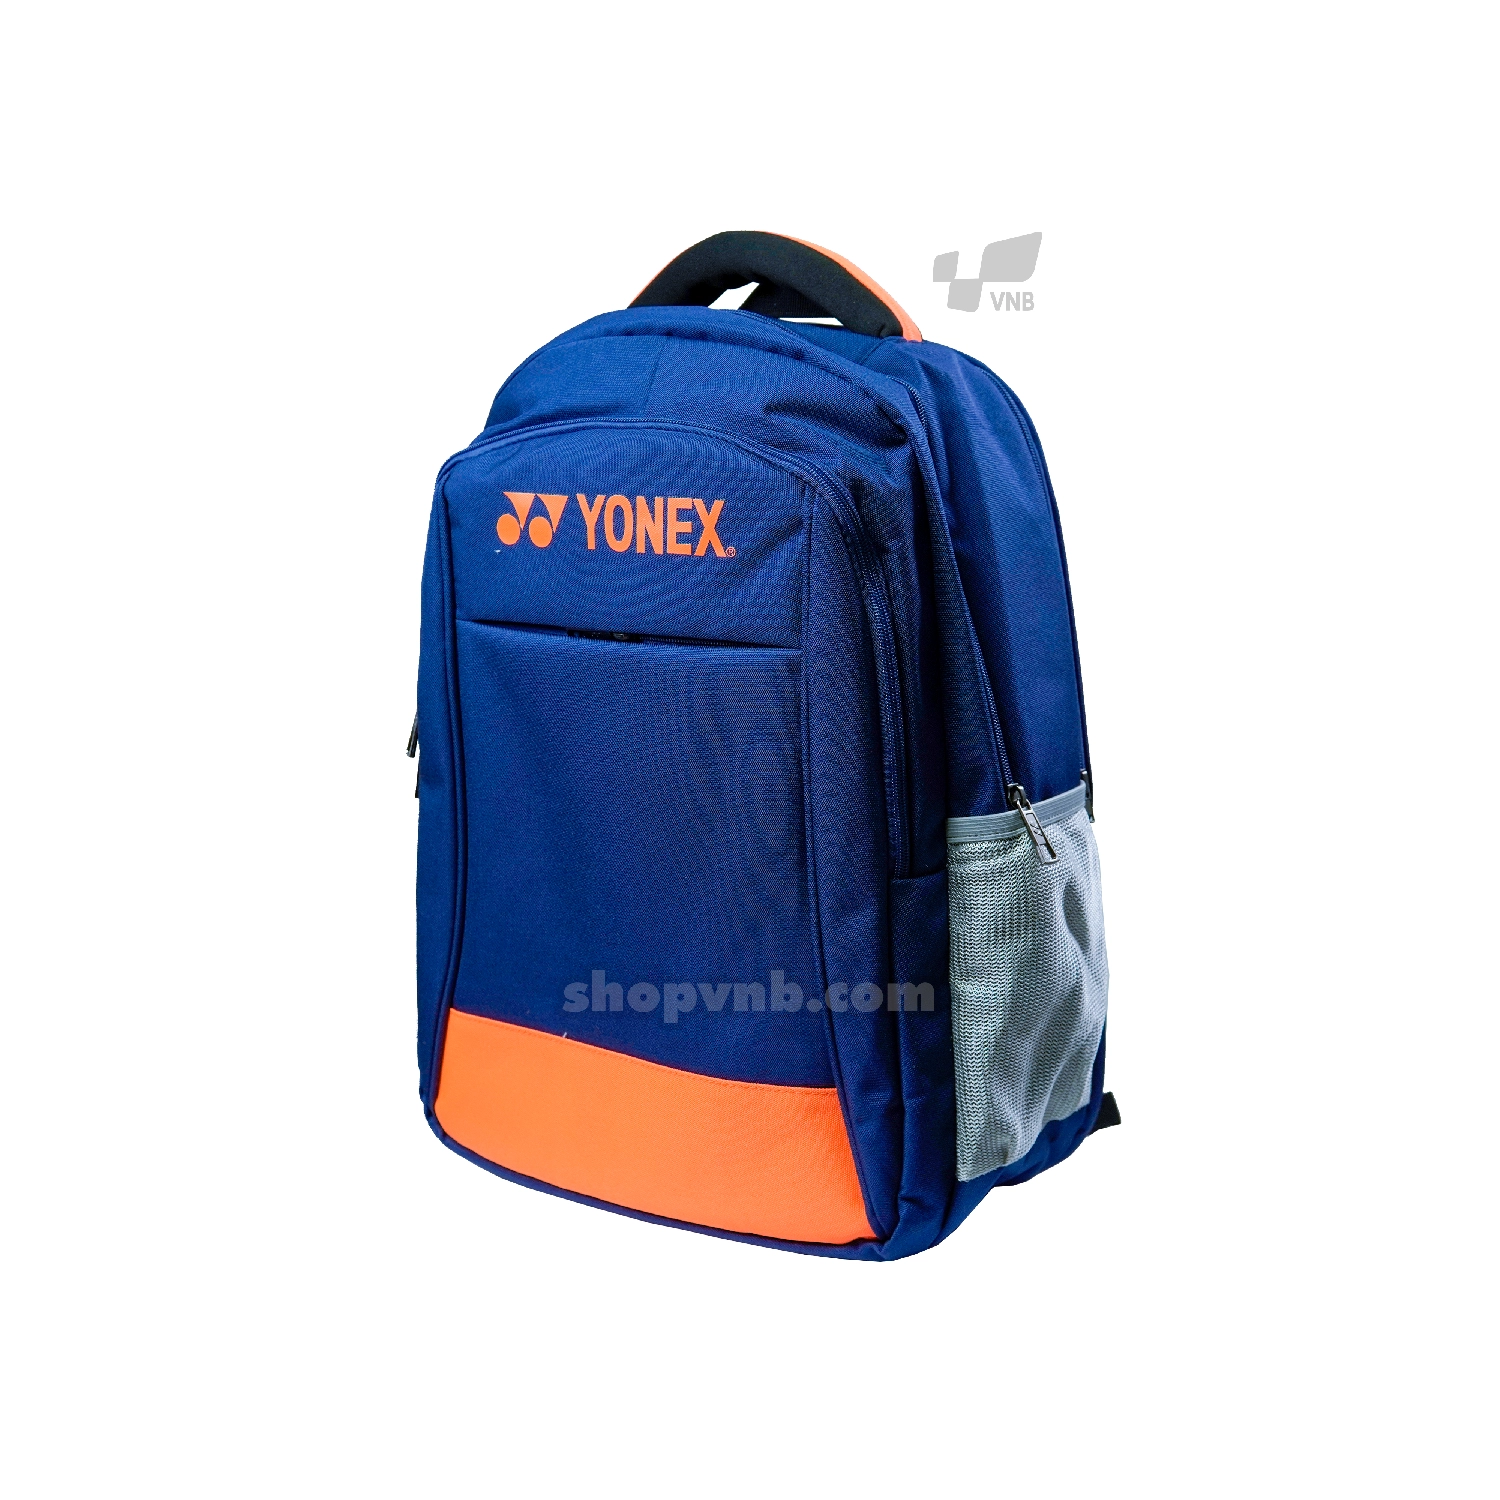 Balo cầu lông giá rẻ Yonex Bag1399 2020